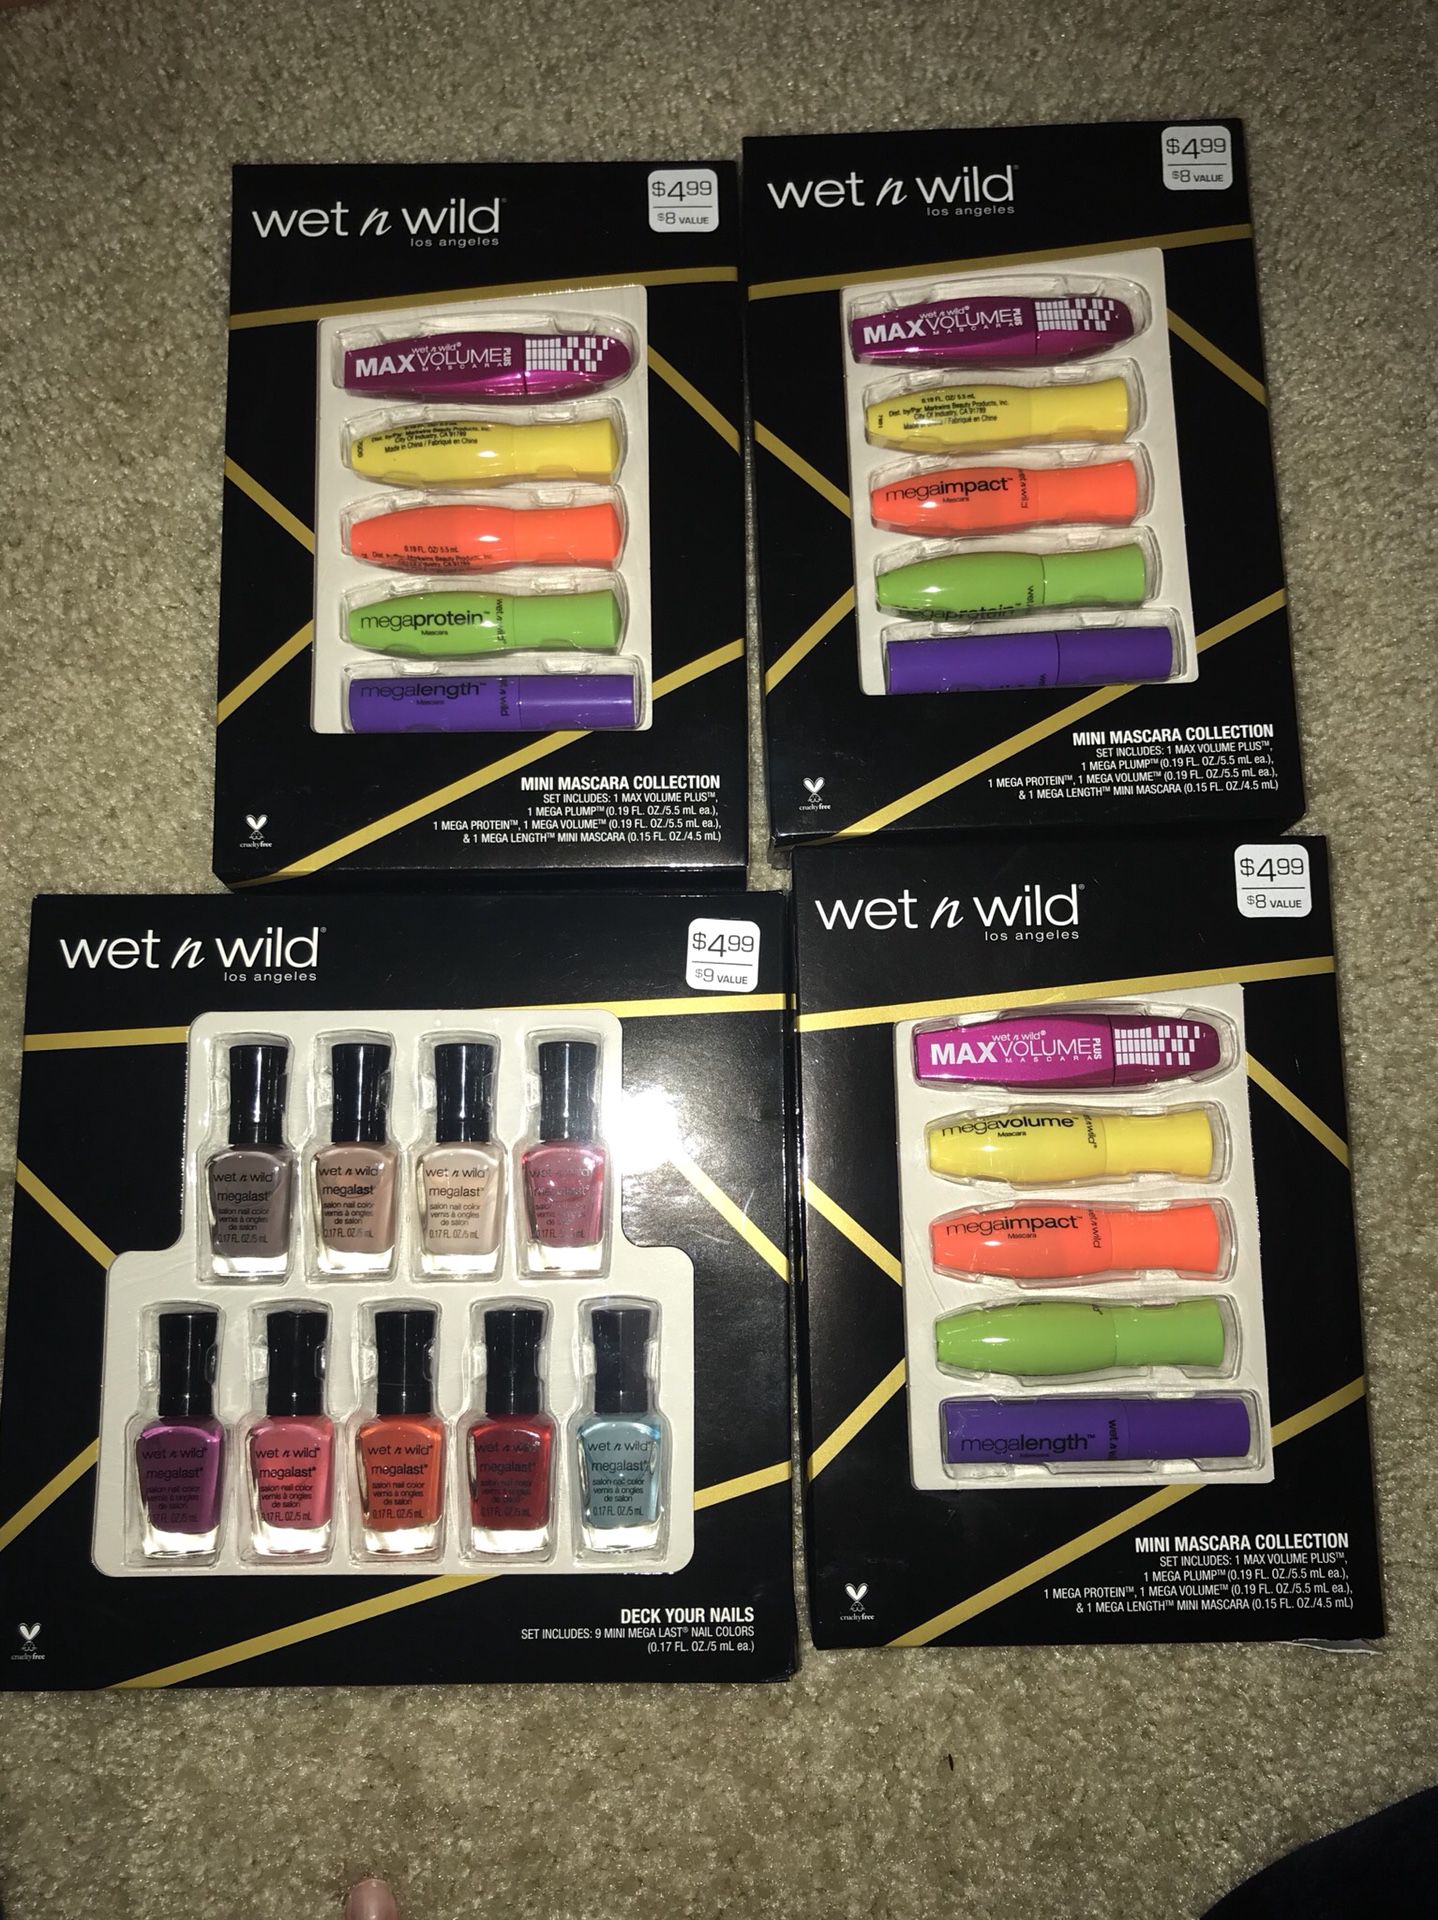 Wet n wild 4 for 8$